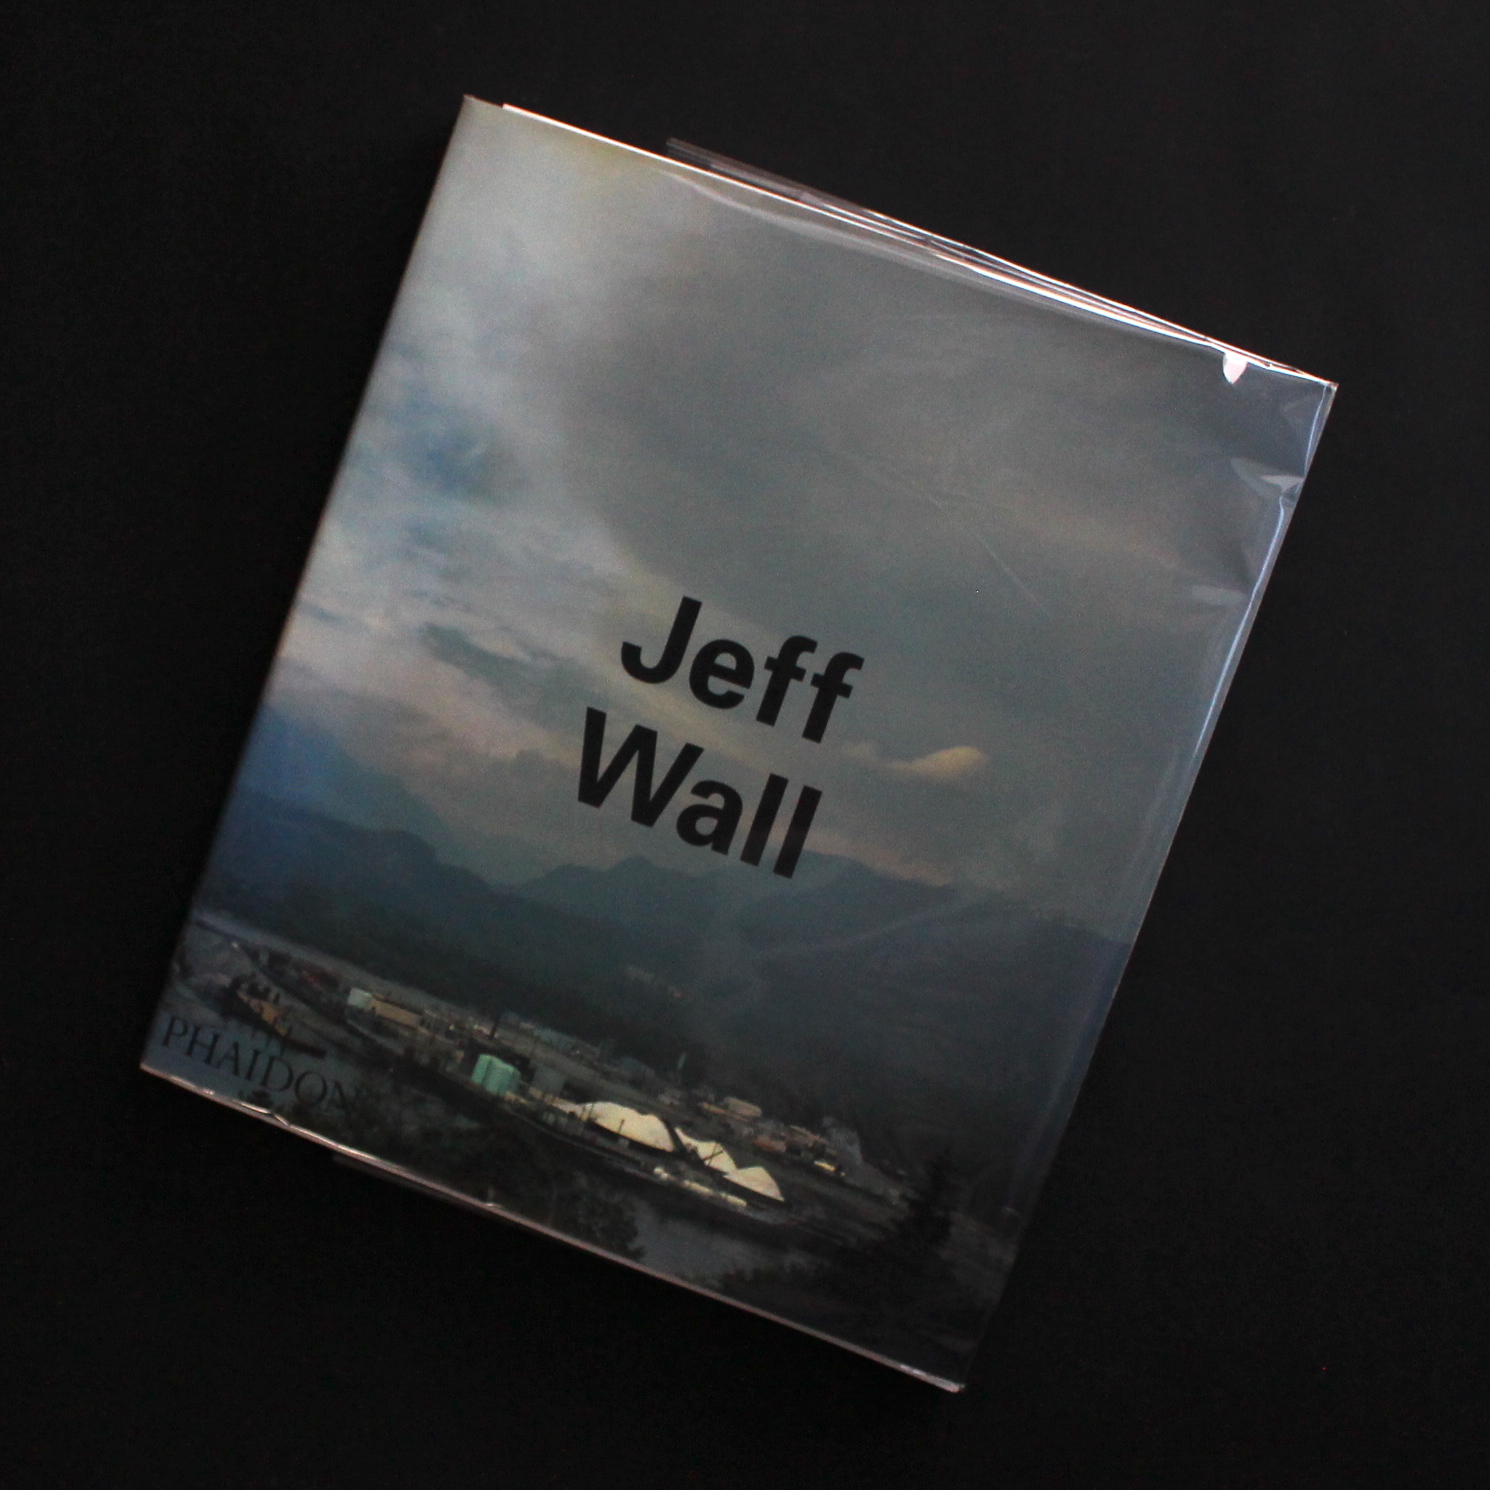 Jeff Wall / Jeff Wall